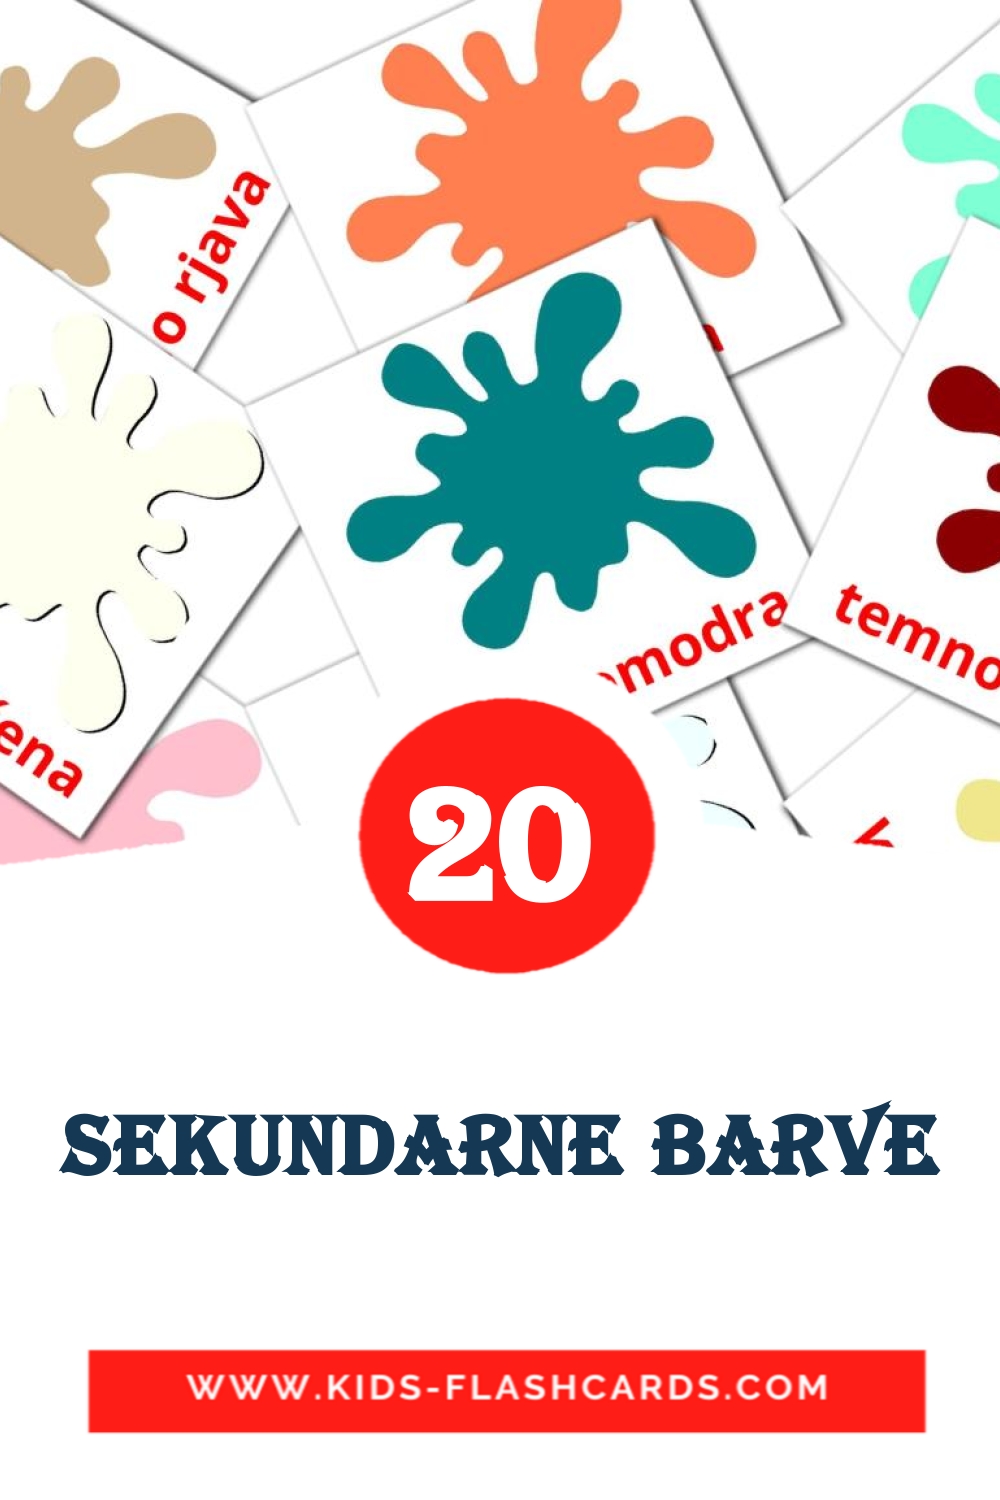 20 tarjetas didacticas de Sekundarne barve para el jardín de infancia en esloveno